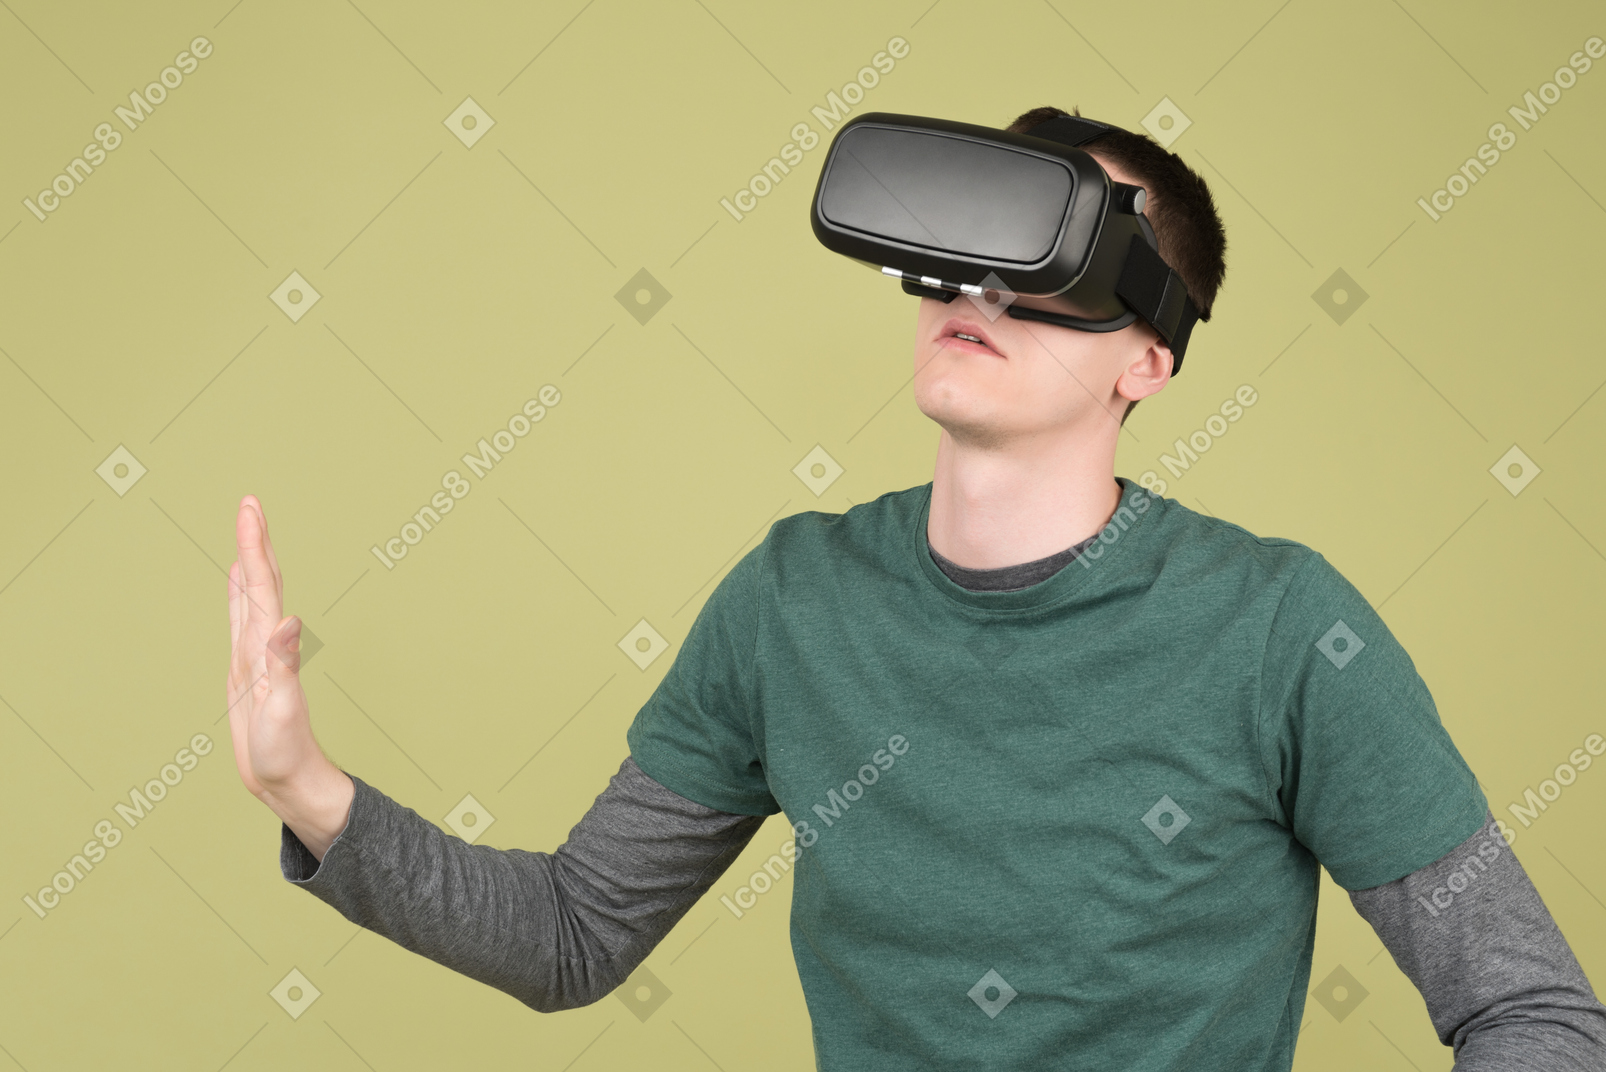 Jovem usando fone de ouvido de realidade virtual